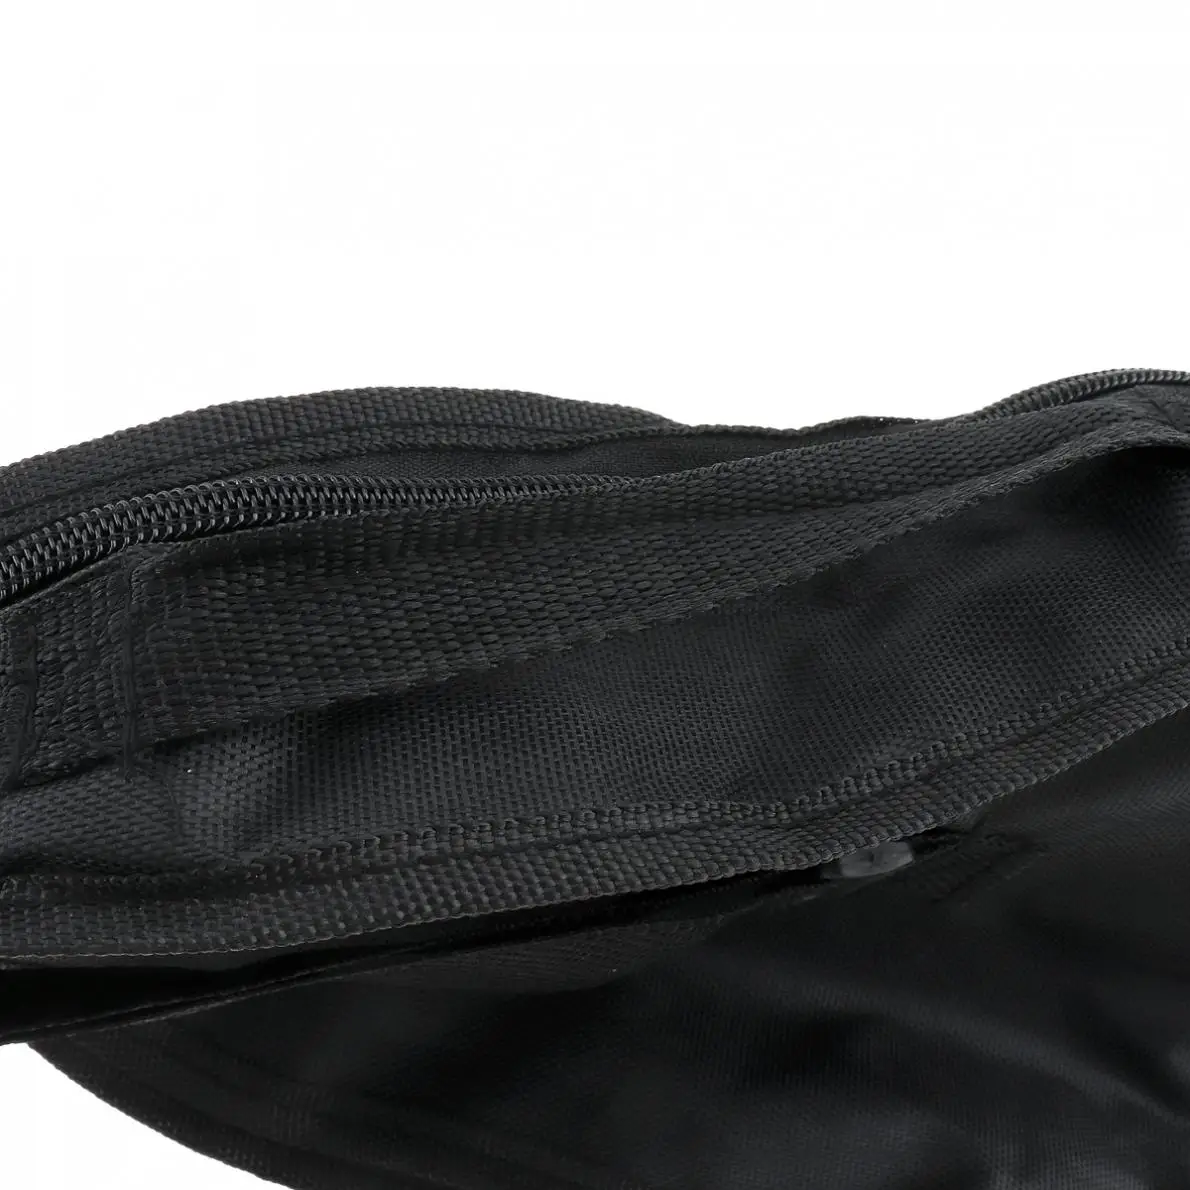 21 дюймов черный портативный укулеле сумка Мягкий чехол Однослойная сумка на одно плечо рюкзак мягкий водонепроницаемый музыкальный Instrumen